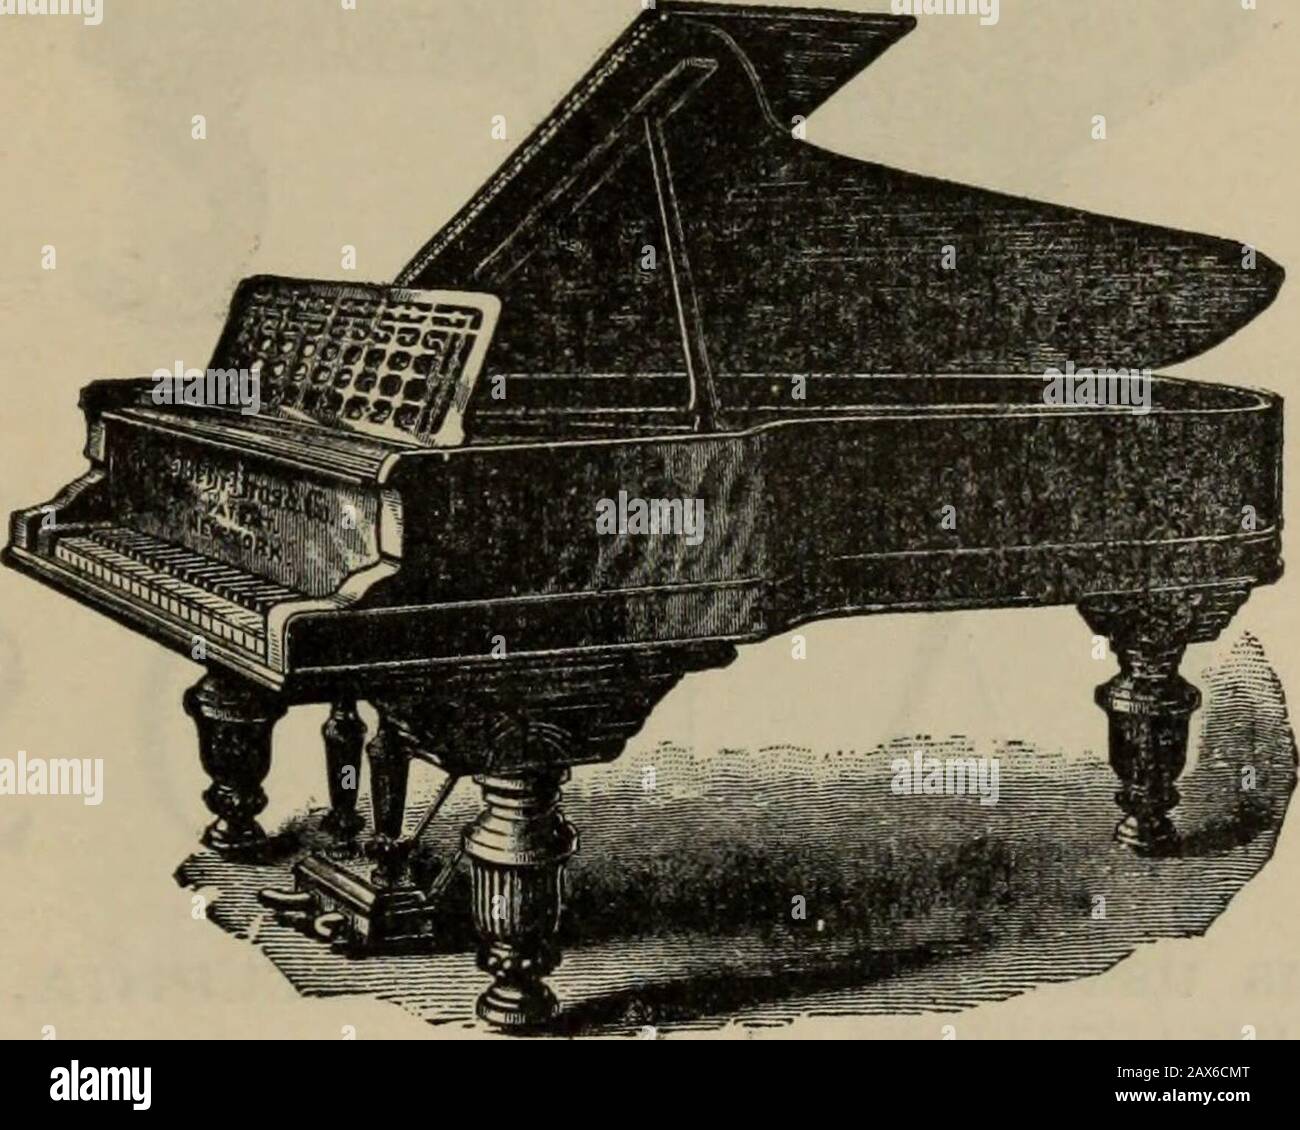 Histoire de la pianoforte américaine : son développement technique, et le  commerce. iend Bechstein, connaît leurs mérites. Si j'avais connu ces Pianos  comme maintenant Ido, je les aurais choisis par moi-même, car